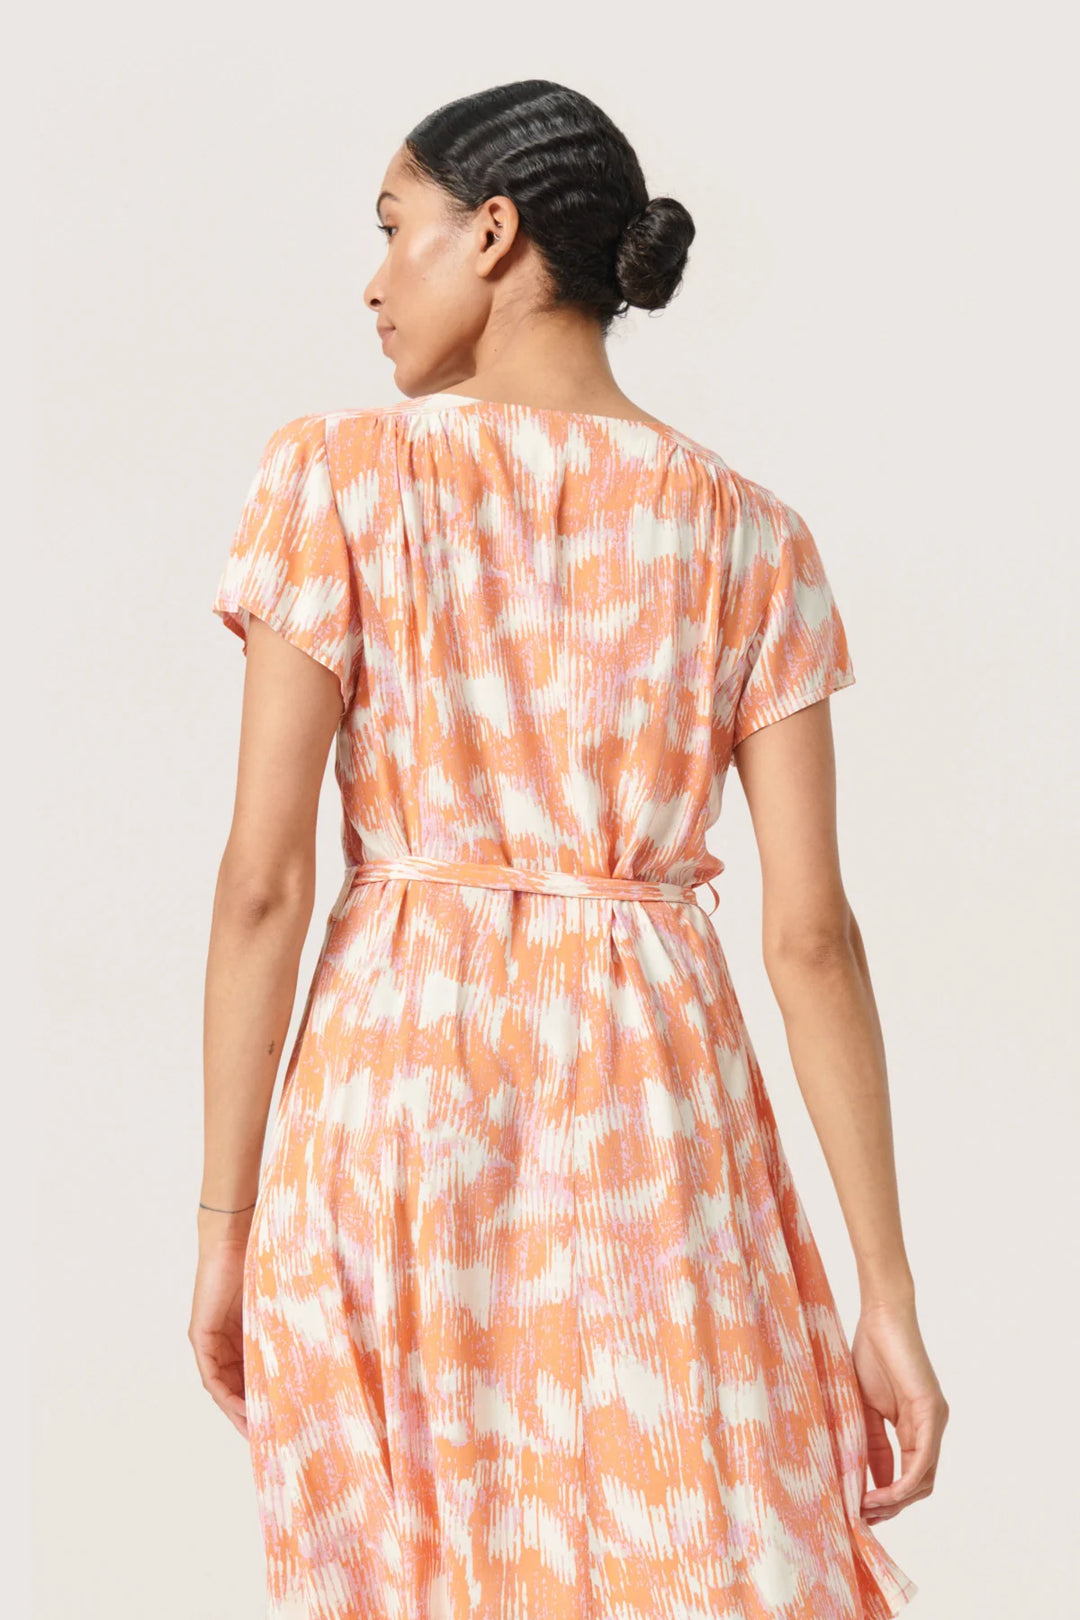 SLDUSINE SHORT DRESS "Tangerine"